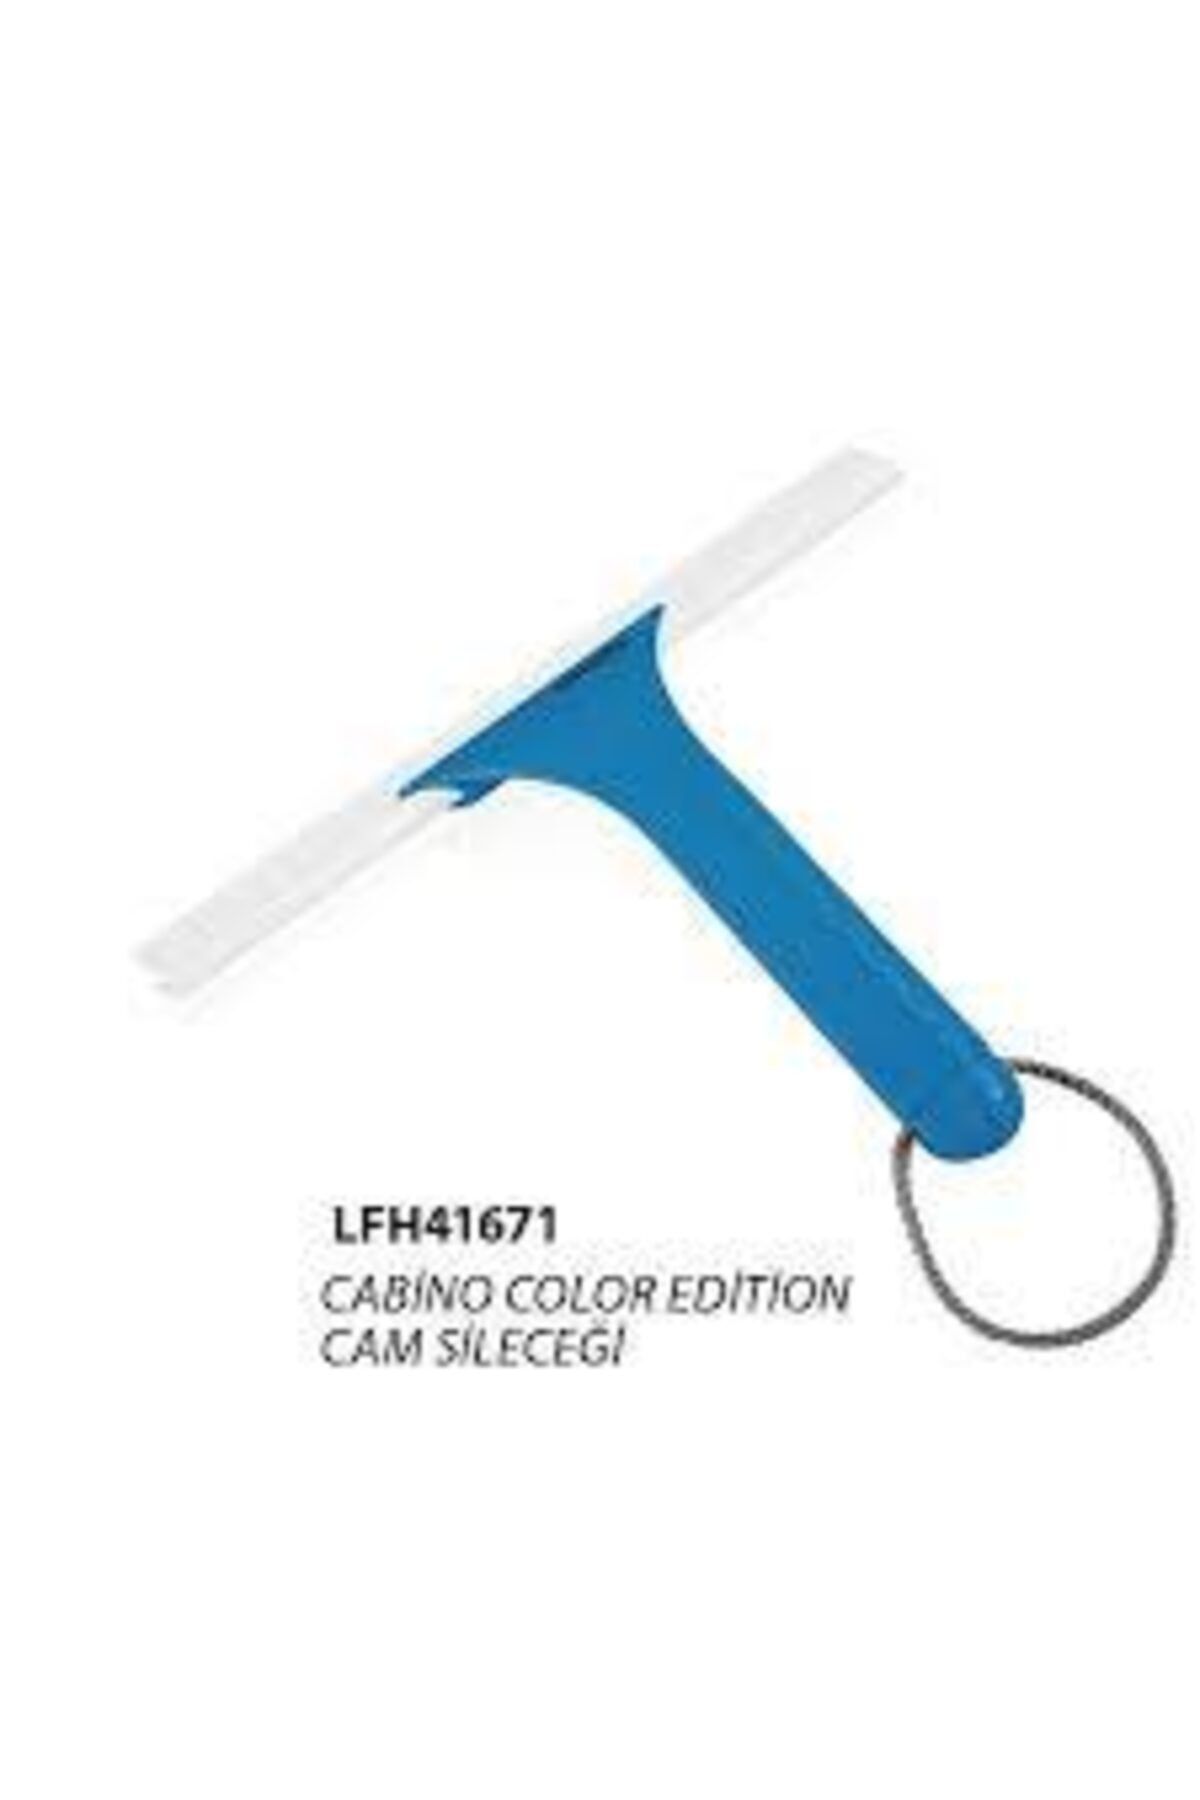 Leifheit Cabino Color Edition Cam Sileceği Mavi